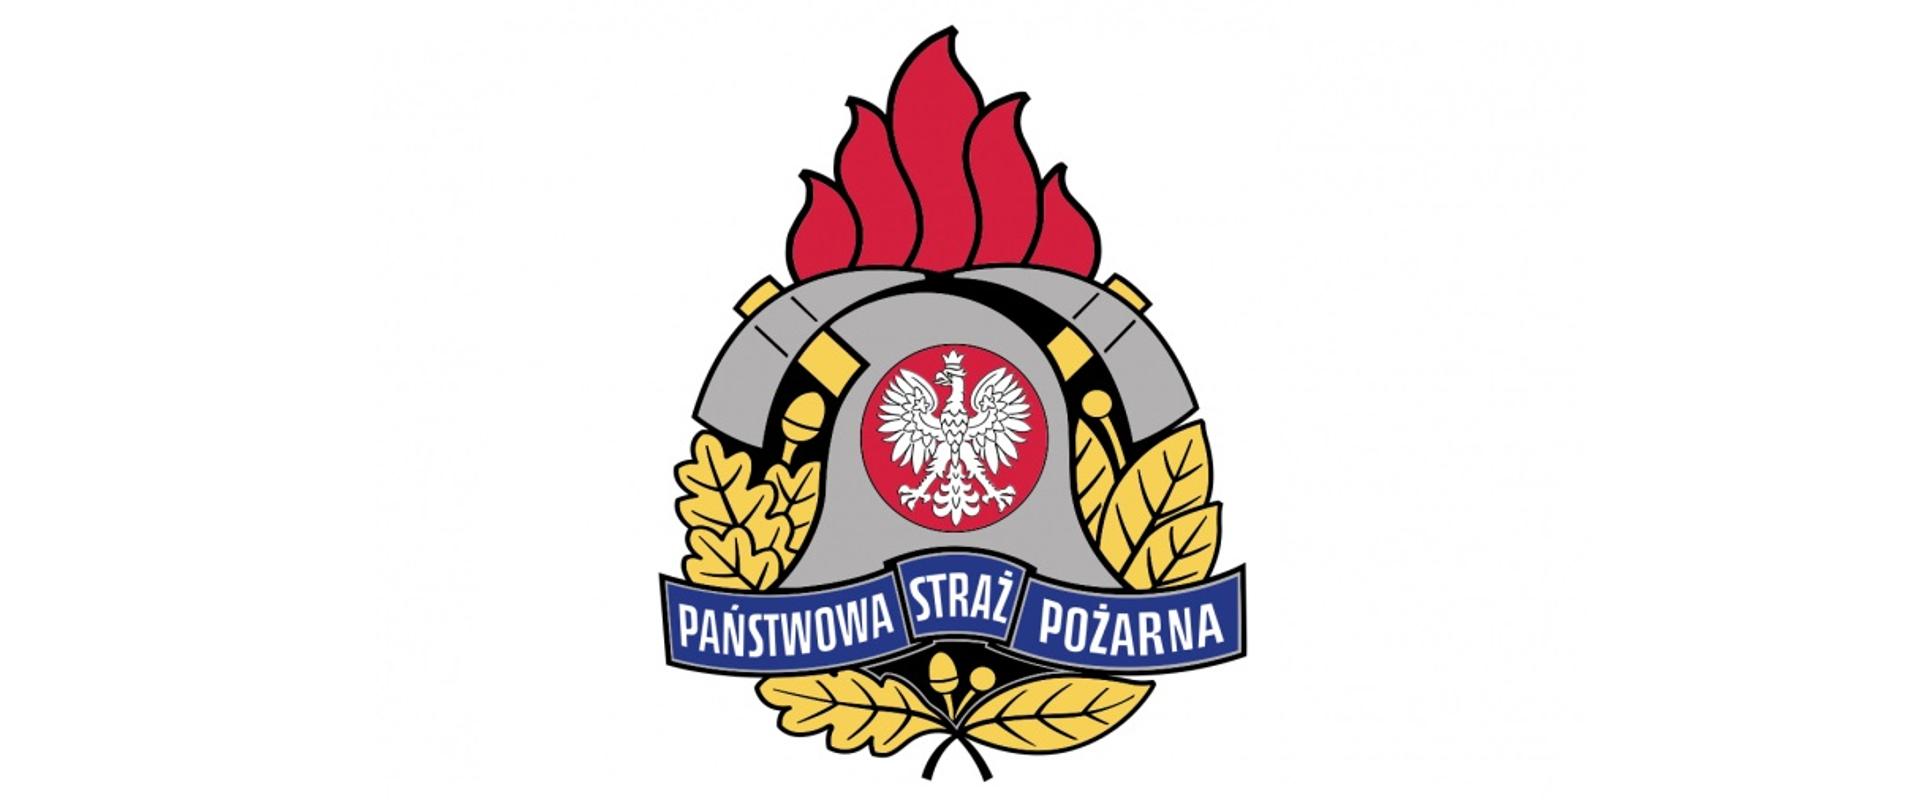 Nowe logo Państwowej Straży Pożarnej w formie panoramy